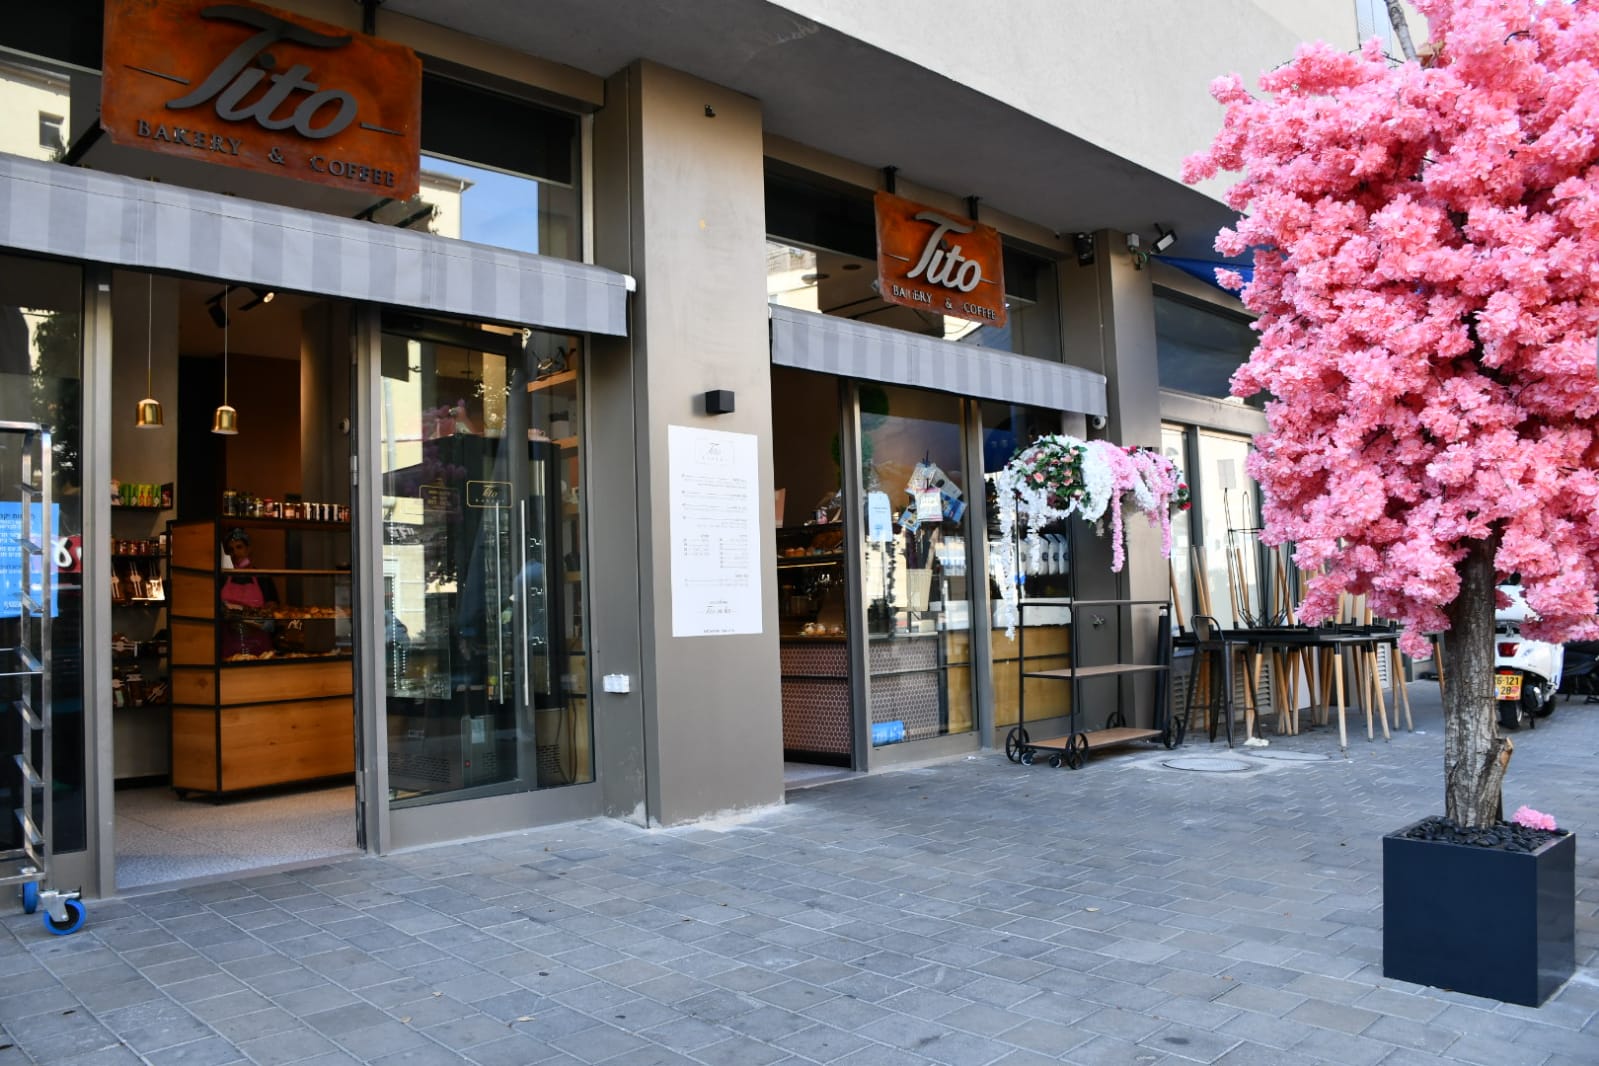 اليوم: مقهى تيتو بيافا يفتح أبوابه مع مفاجآت جديدة